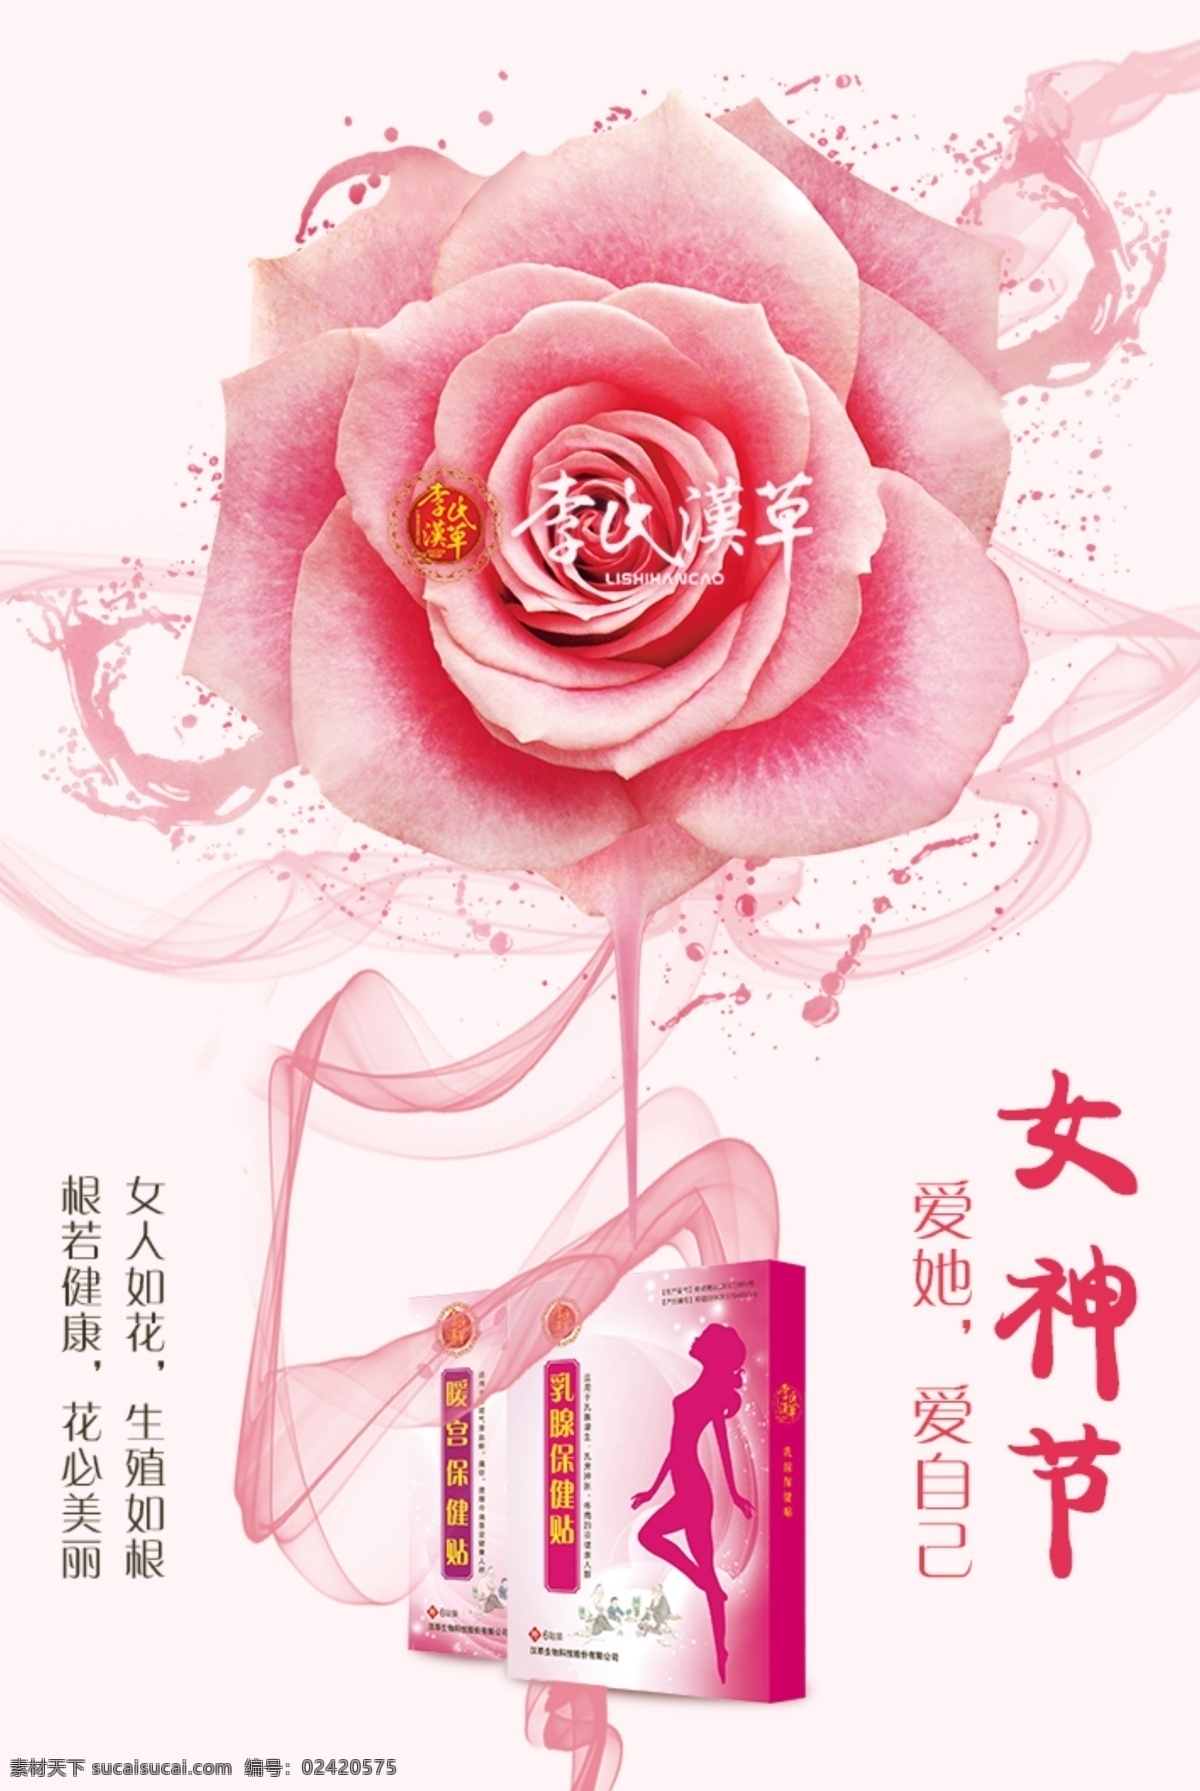 女神节海报 女性产品 女人如花 粉色玫瑰 女性健康 简约 分层